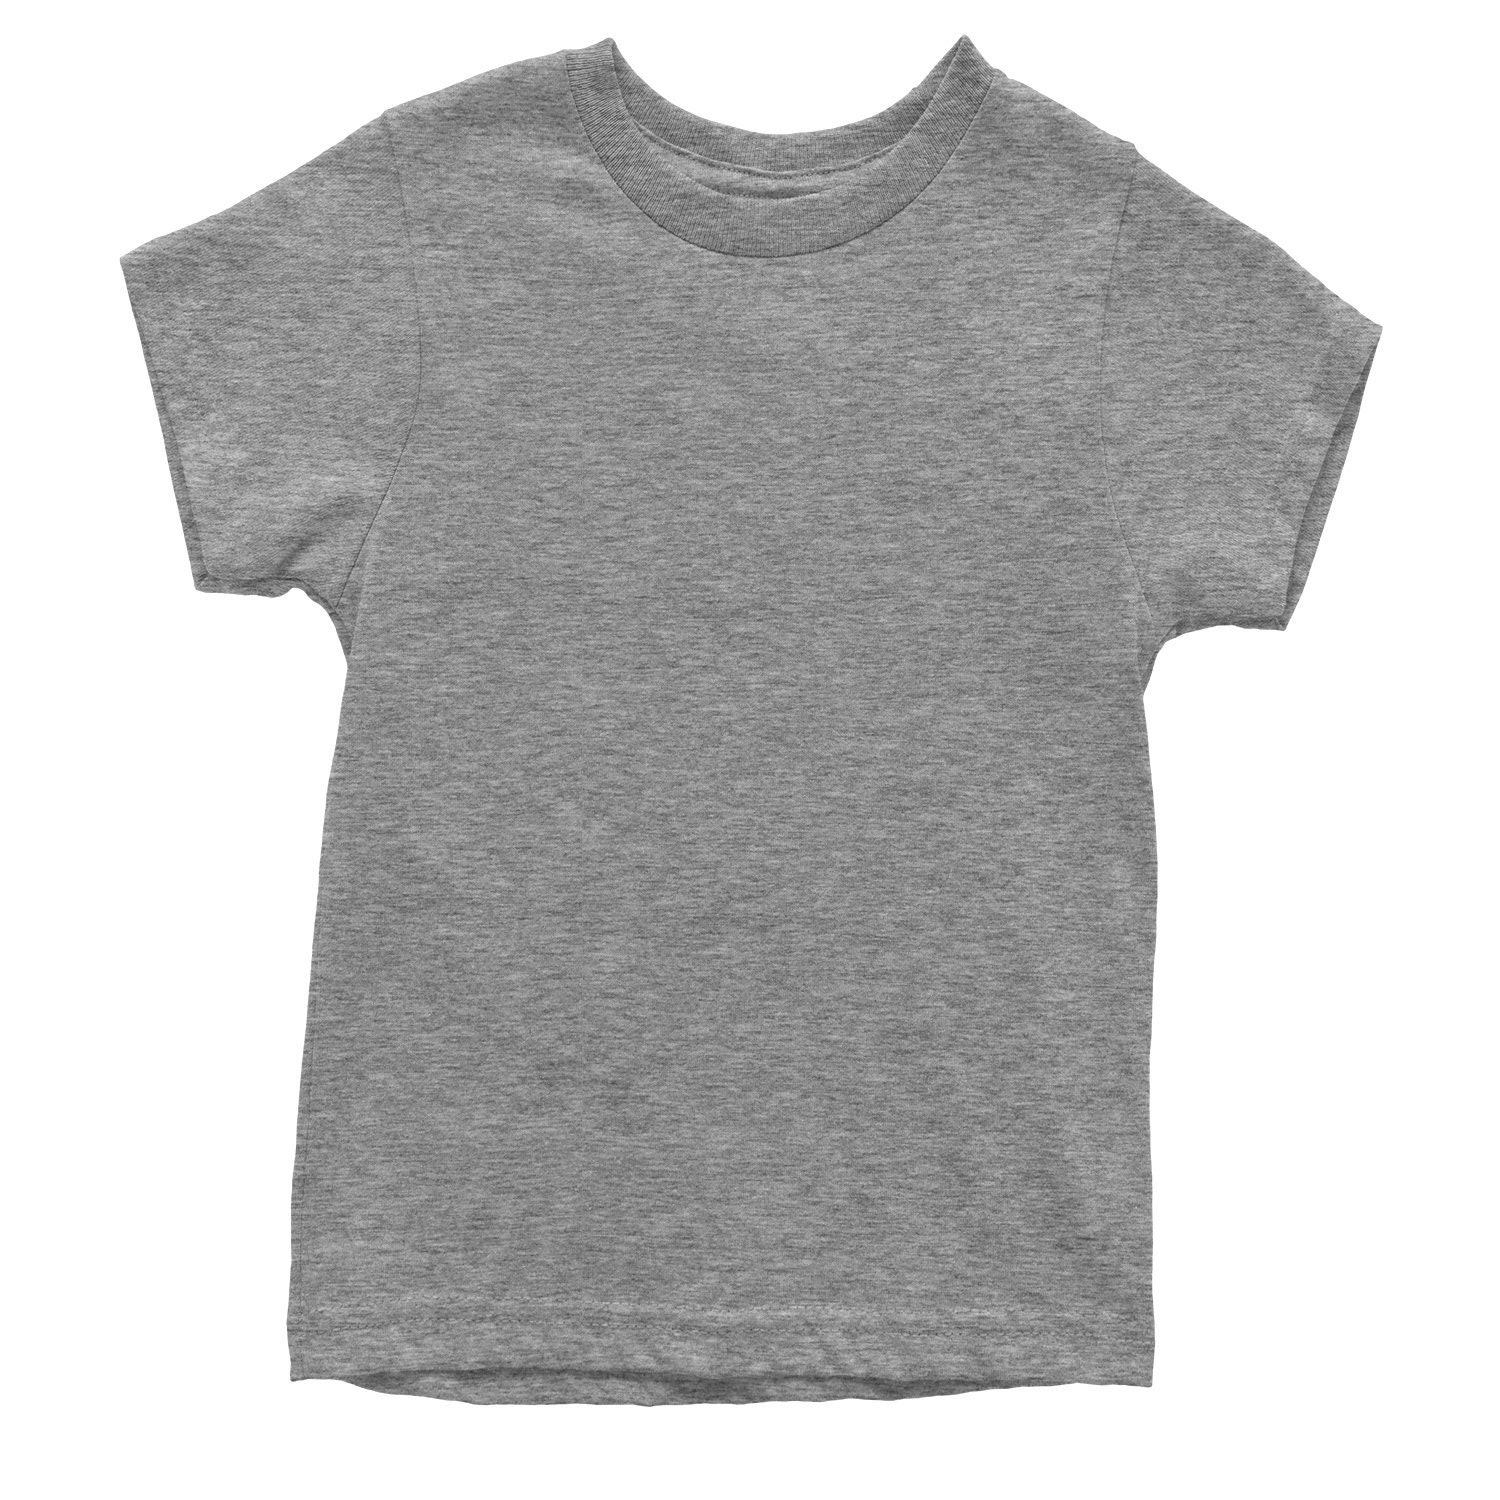 Basics Plain Blank Youth T-shirt - Etsy